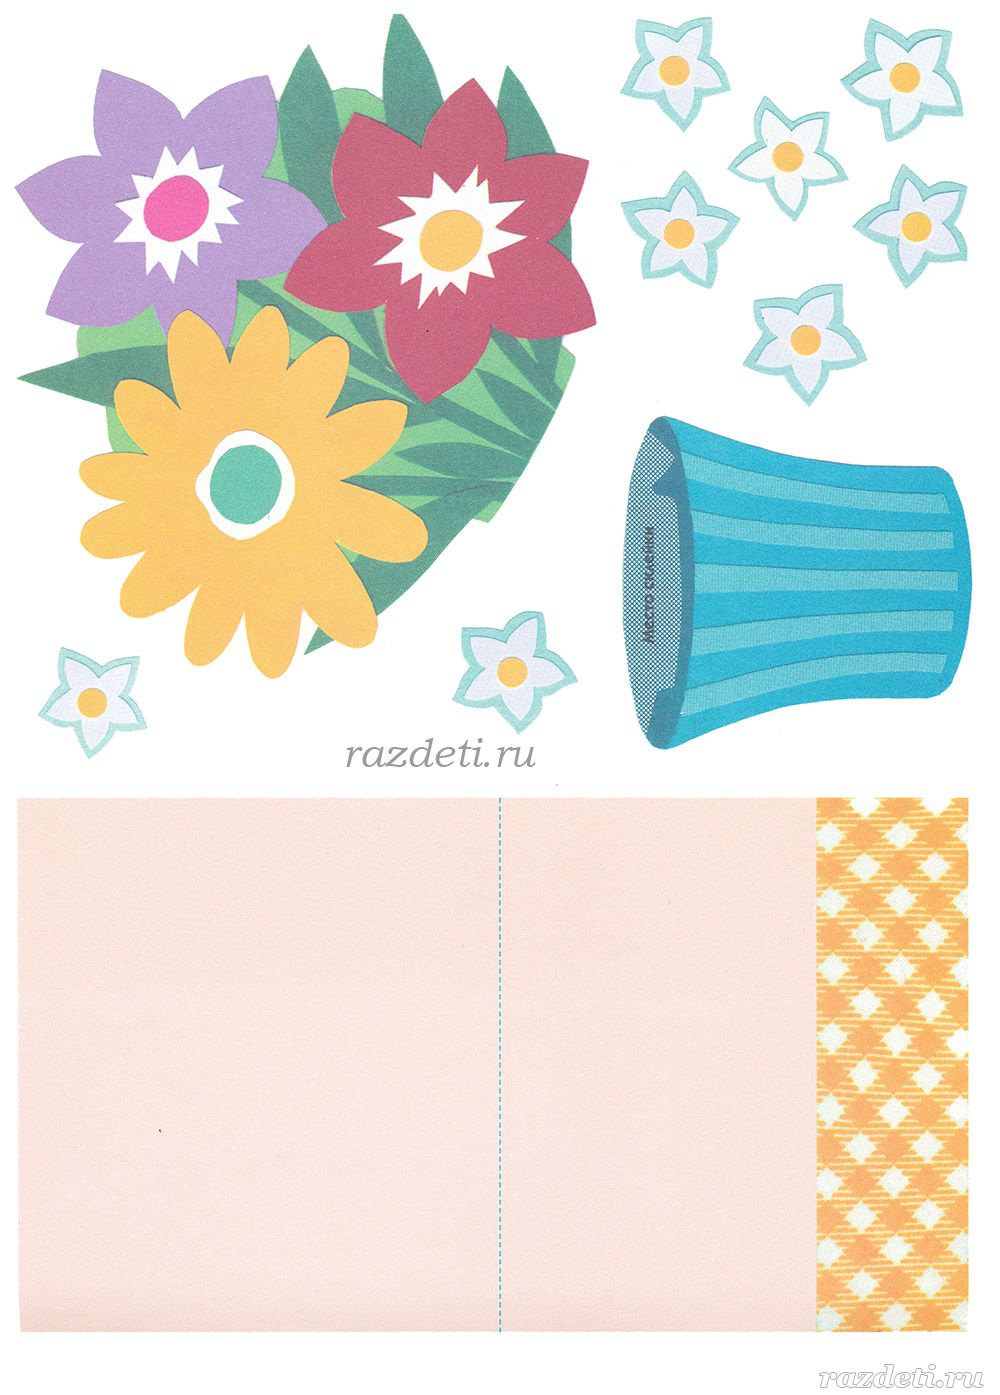 Открытки своими руками шаблоны для детей. Аппликация.цветы. Шаблон открытки. Заготовки открыток для детей. Заготовки для бумажных цветов.